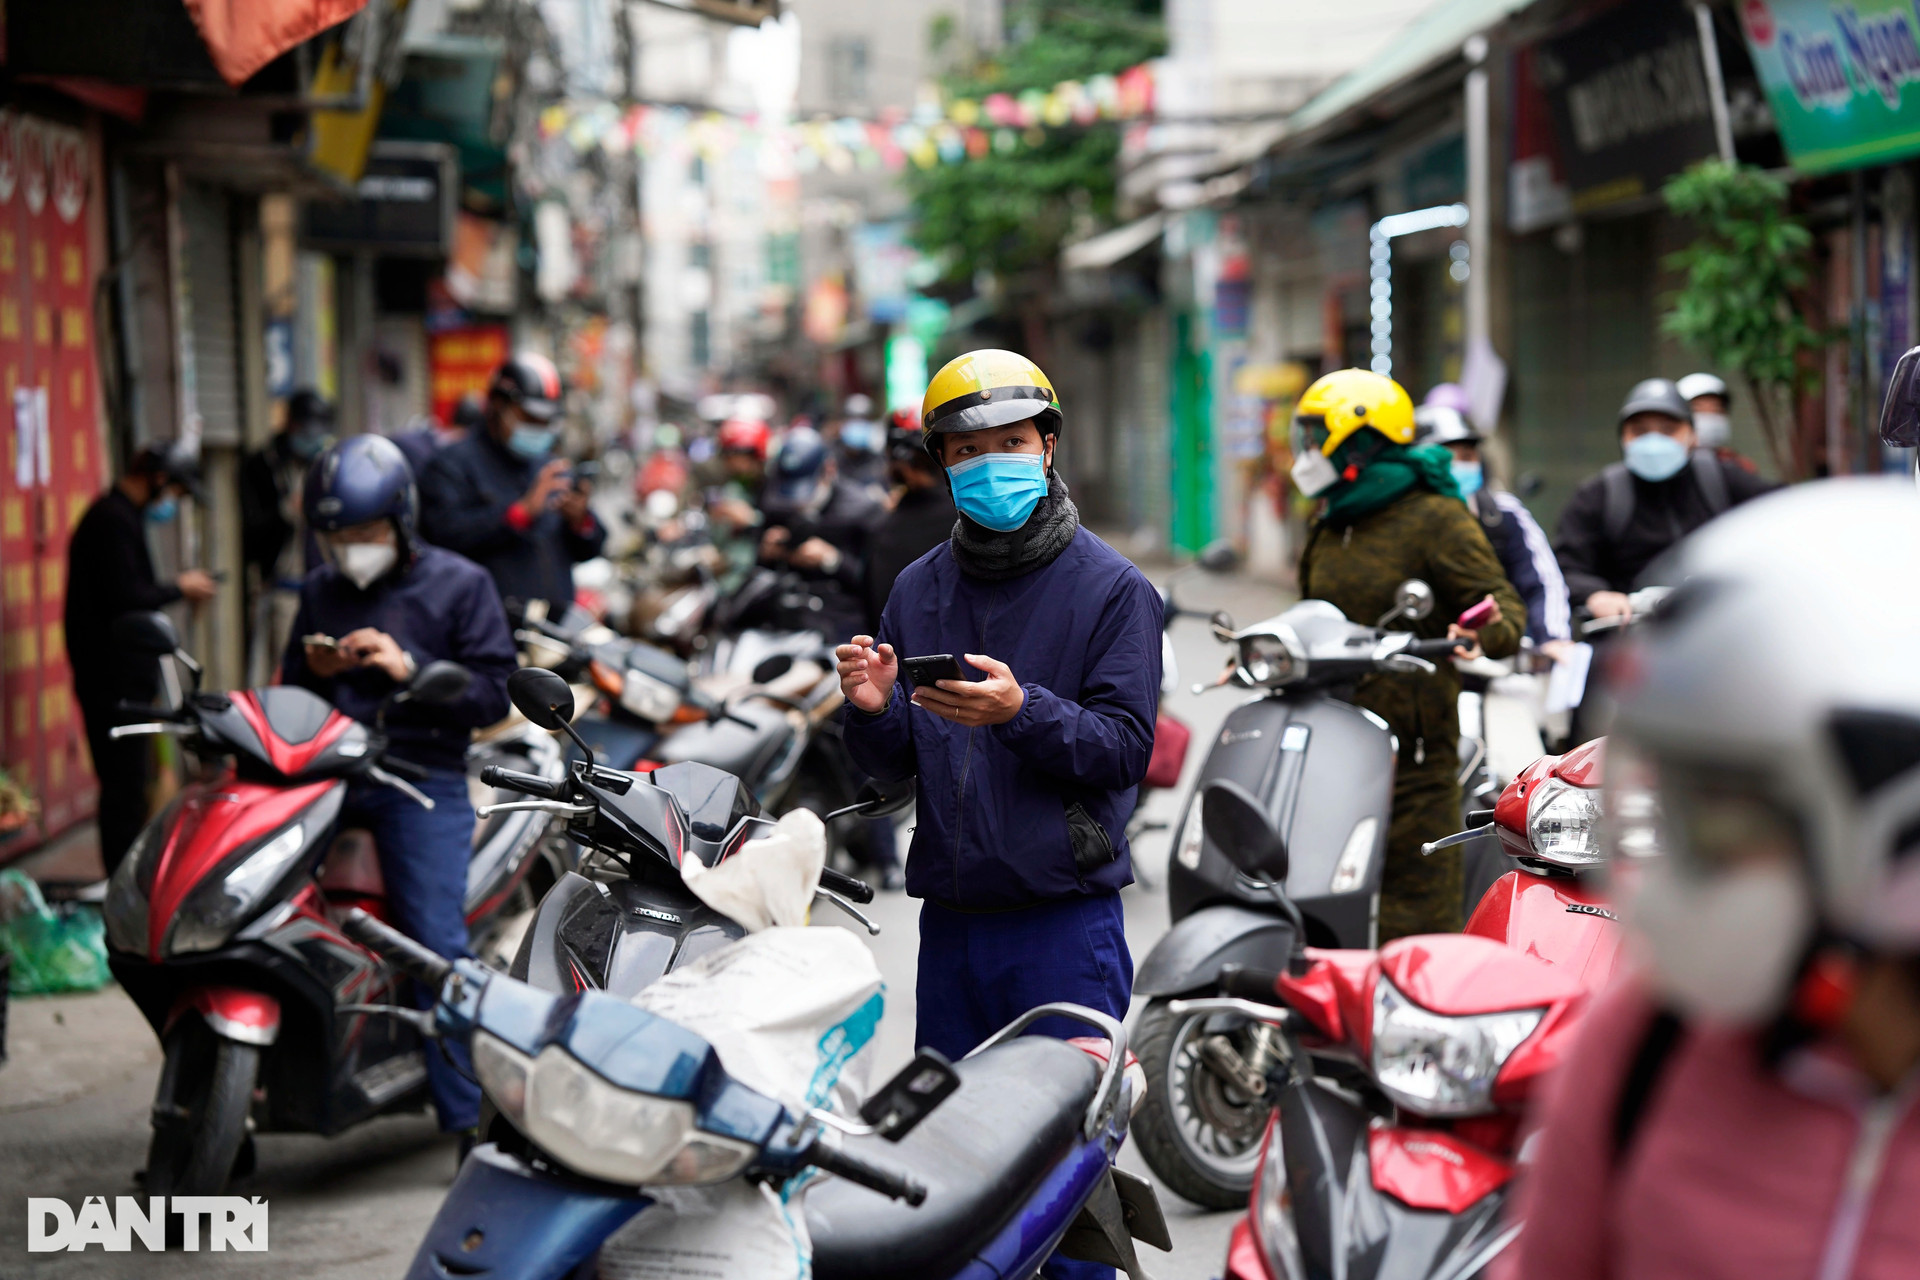 Hà Nội: Đông nghịt người quét QR Code tại ổ dịch Phú Đô để ra vào phường - 2